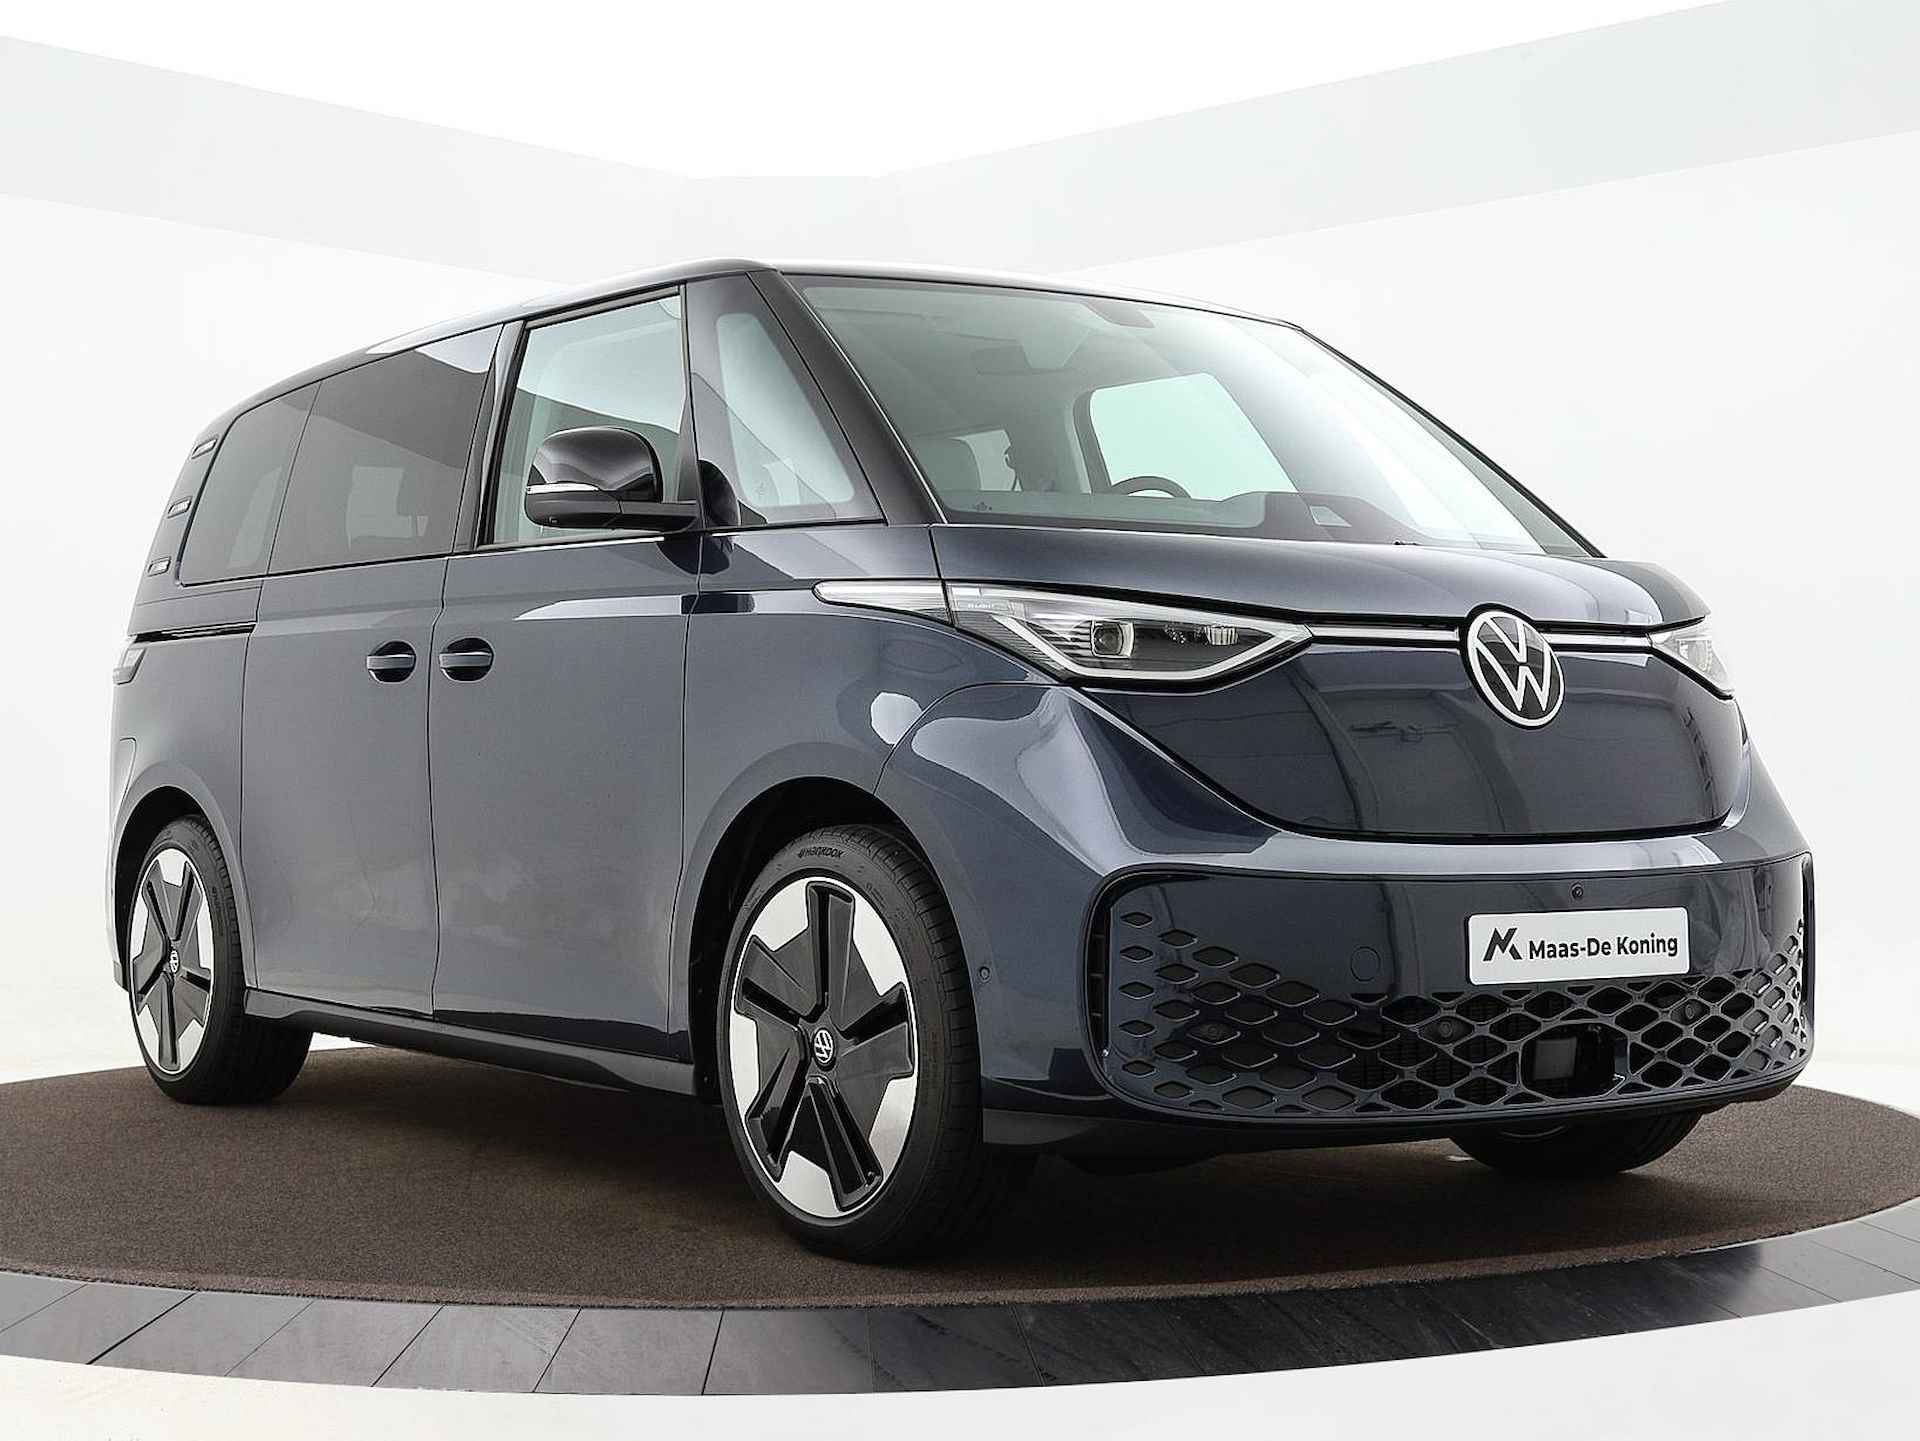 Volkswagen ID. Buzz pro advantage Elektromotor 150 kW / 204 pk electr. aandrijving · Assistance pakket · Design pakket · multimedia pakket plus · open & close pakket plus · trekhaak · MEGA Sale - 23/40